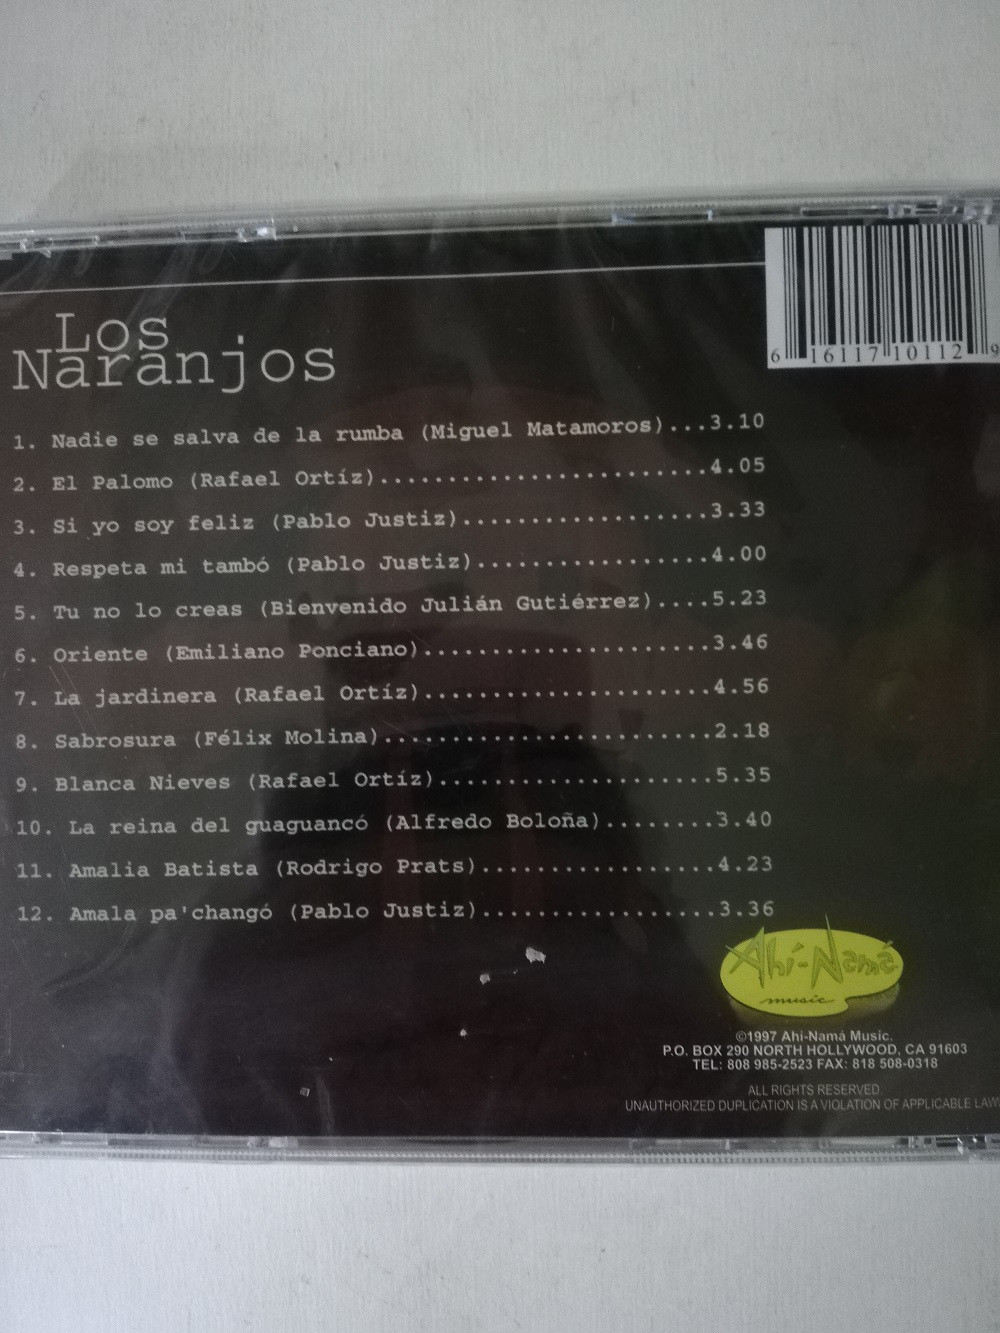 Imagen CD LOS NARANJOS - RESPETA MI TAMBÓ 2